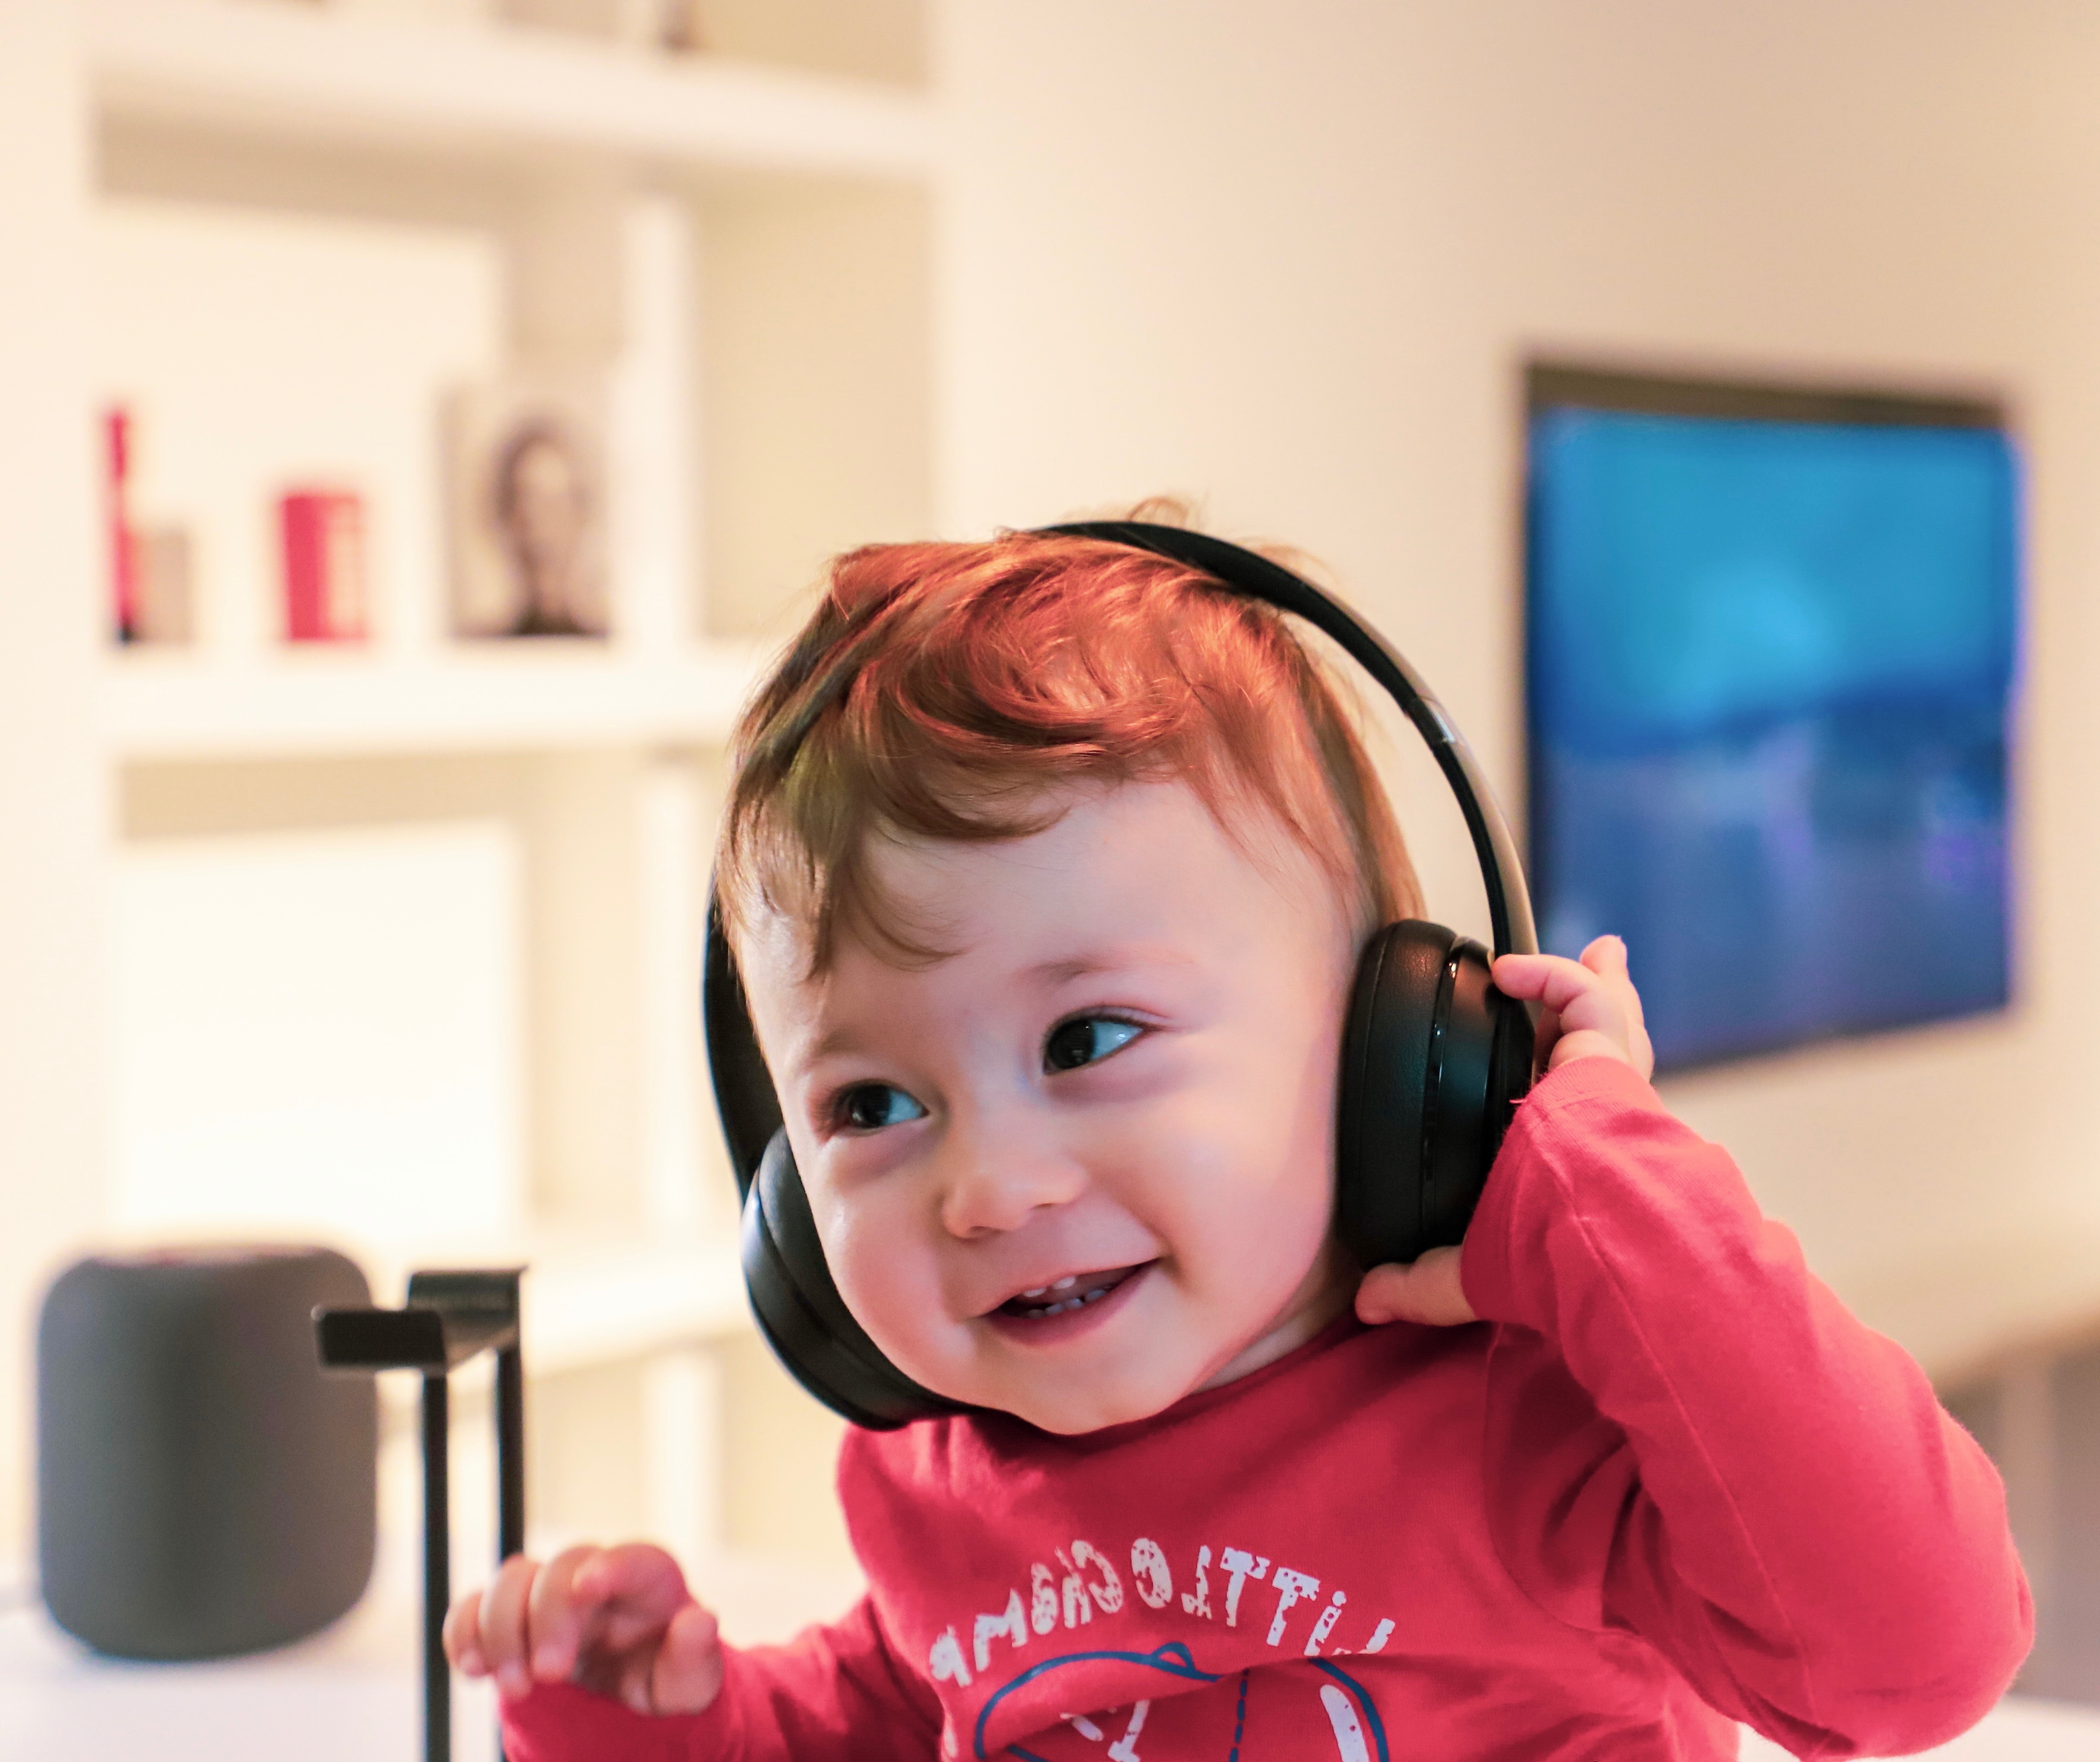 Infant wearing headphones